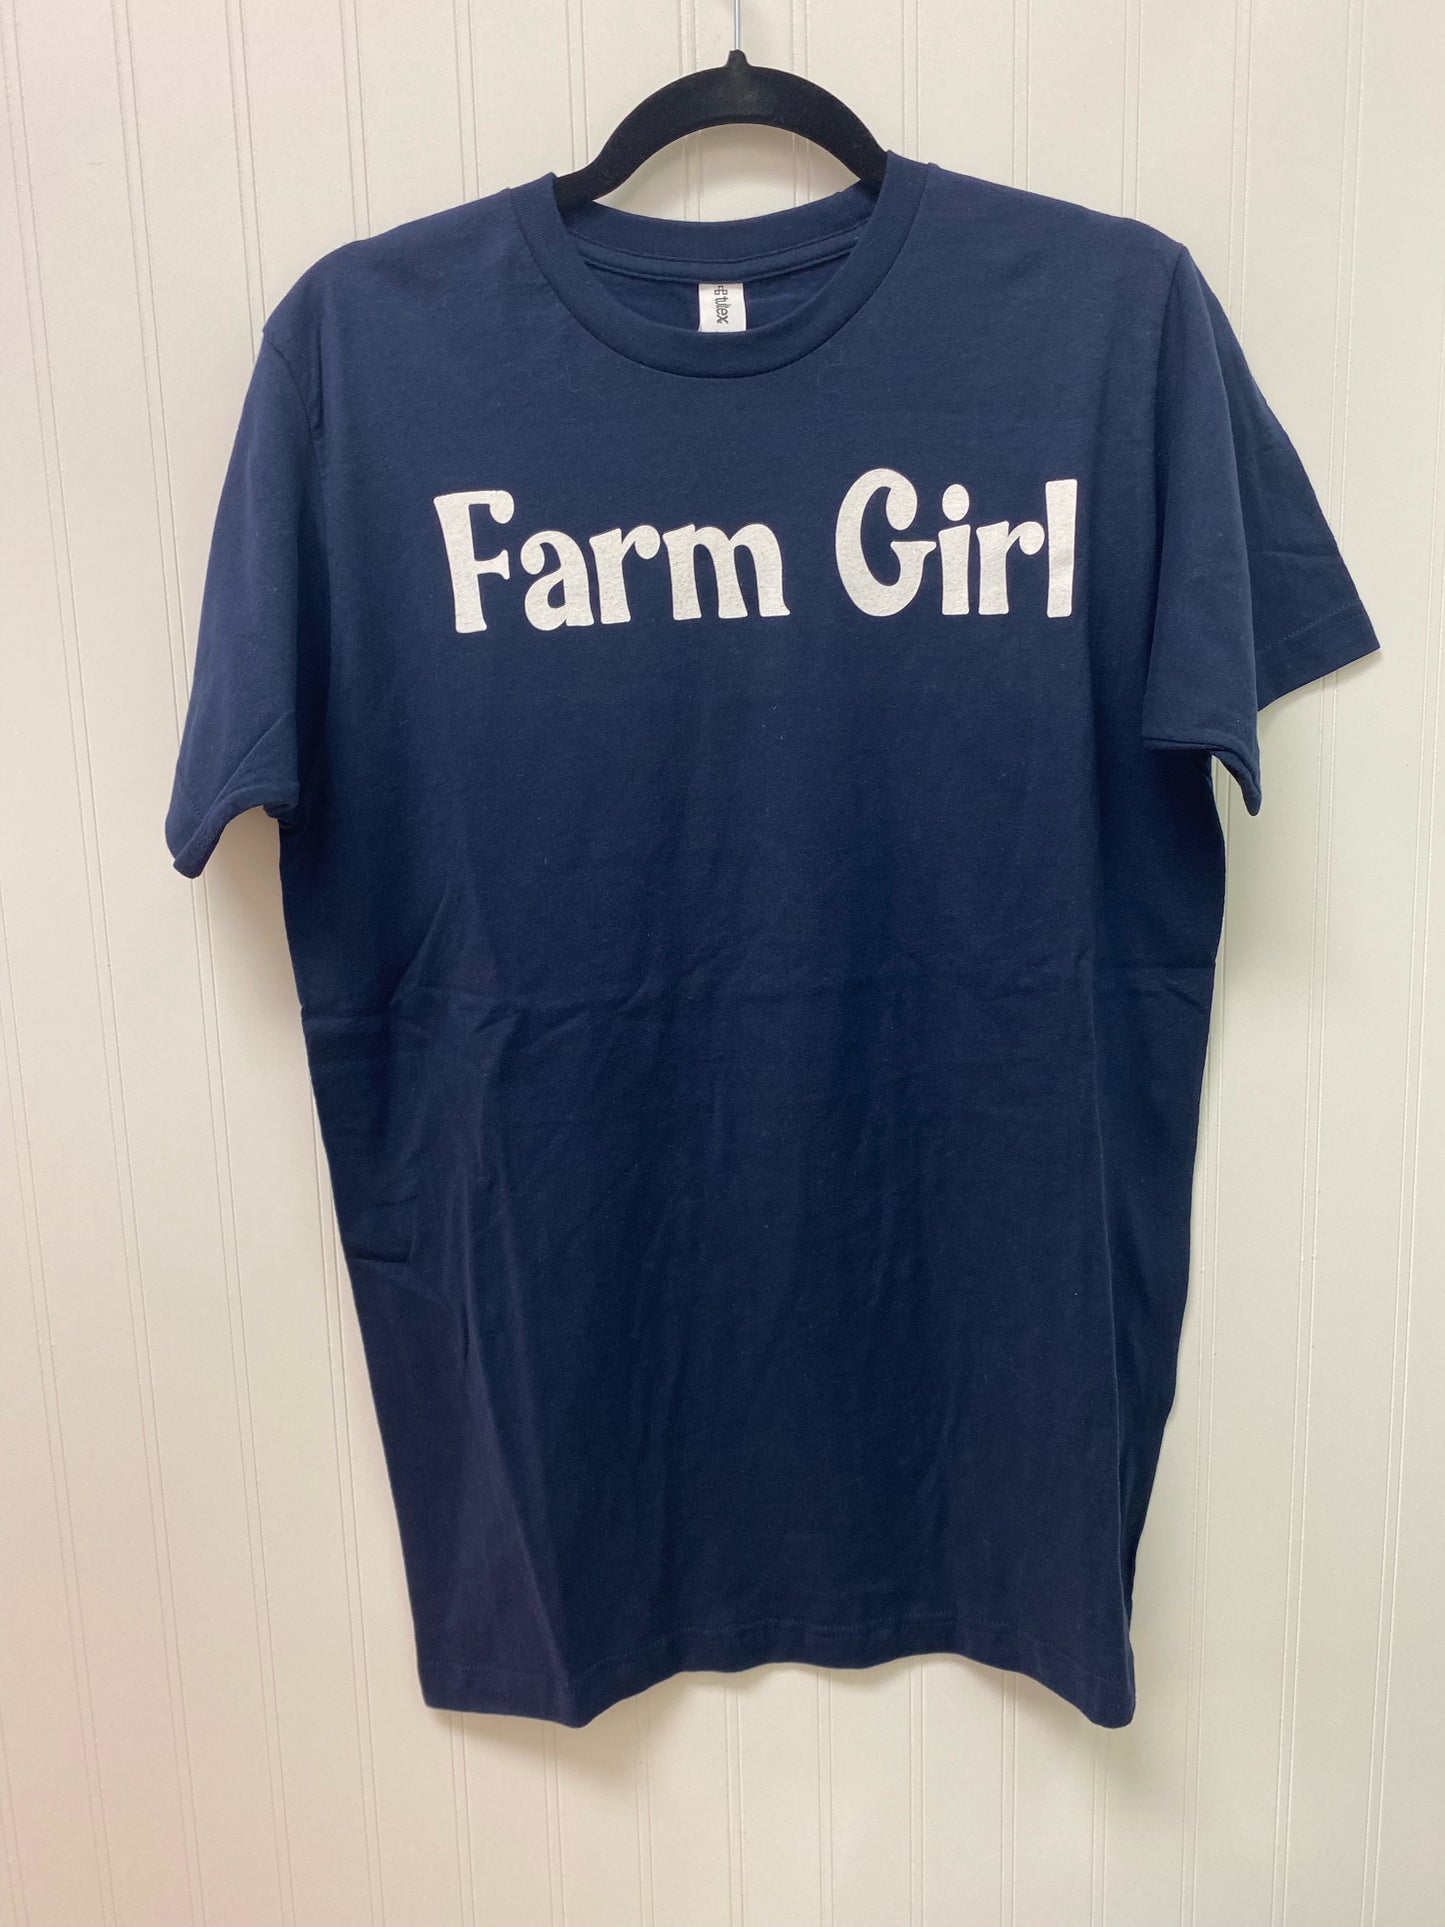 Farm Girl Tee